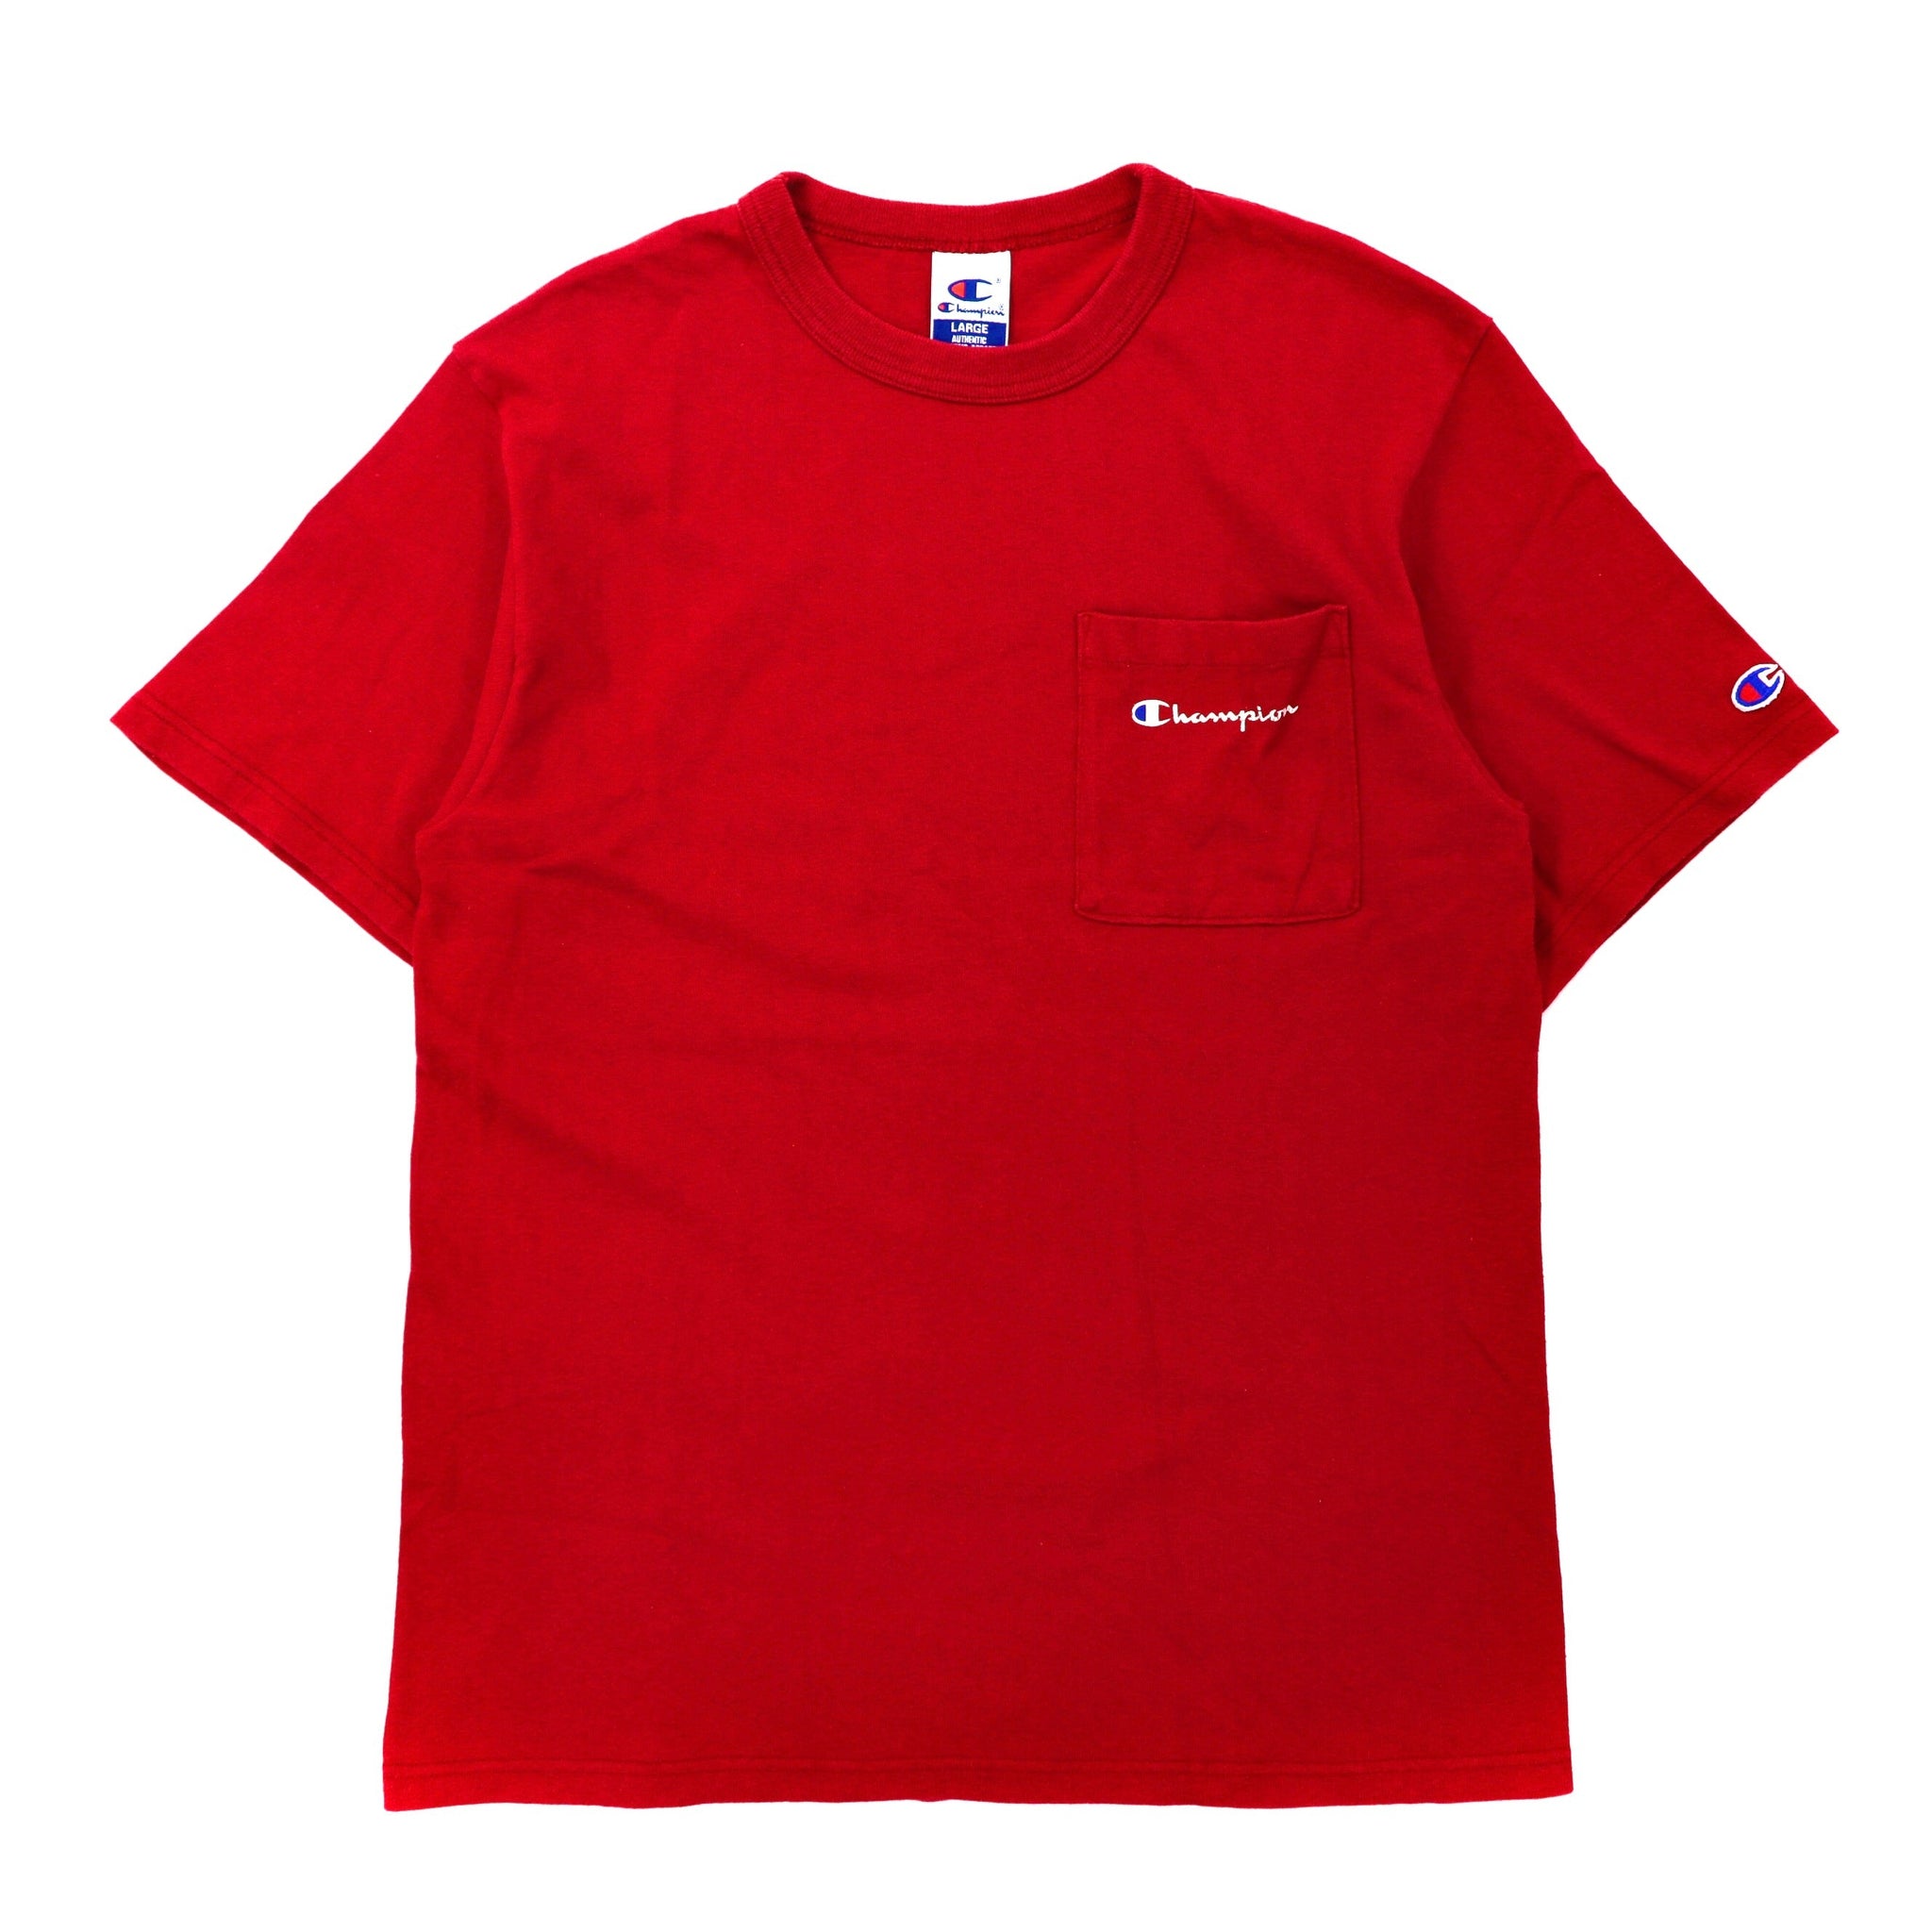 Champion ポケットTシャツ L レッド コットン ヘビーウェイト スクリプトロゴプリント 90年代 USA製